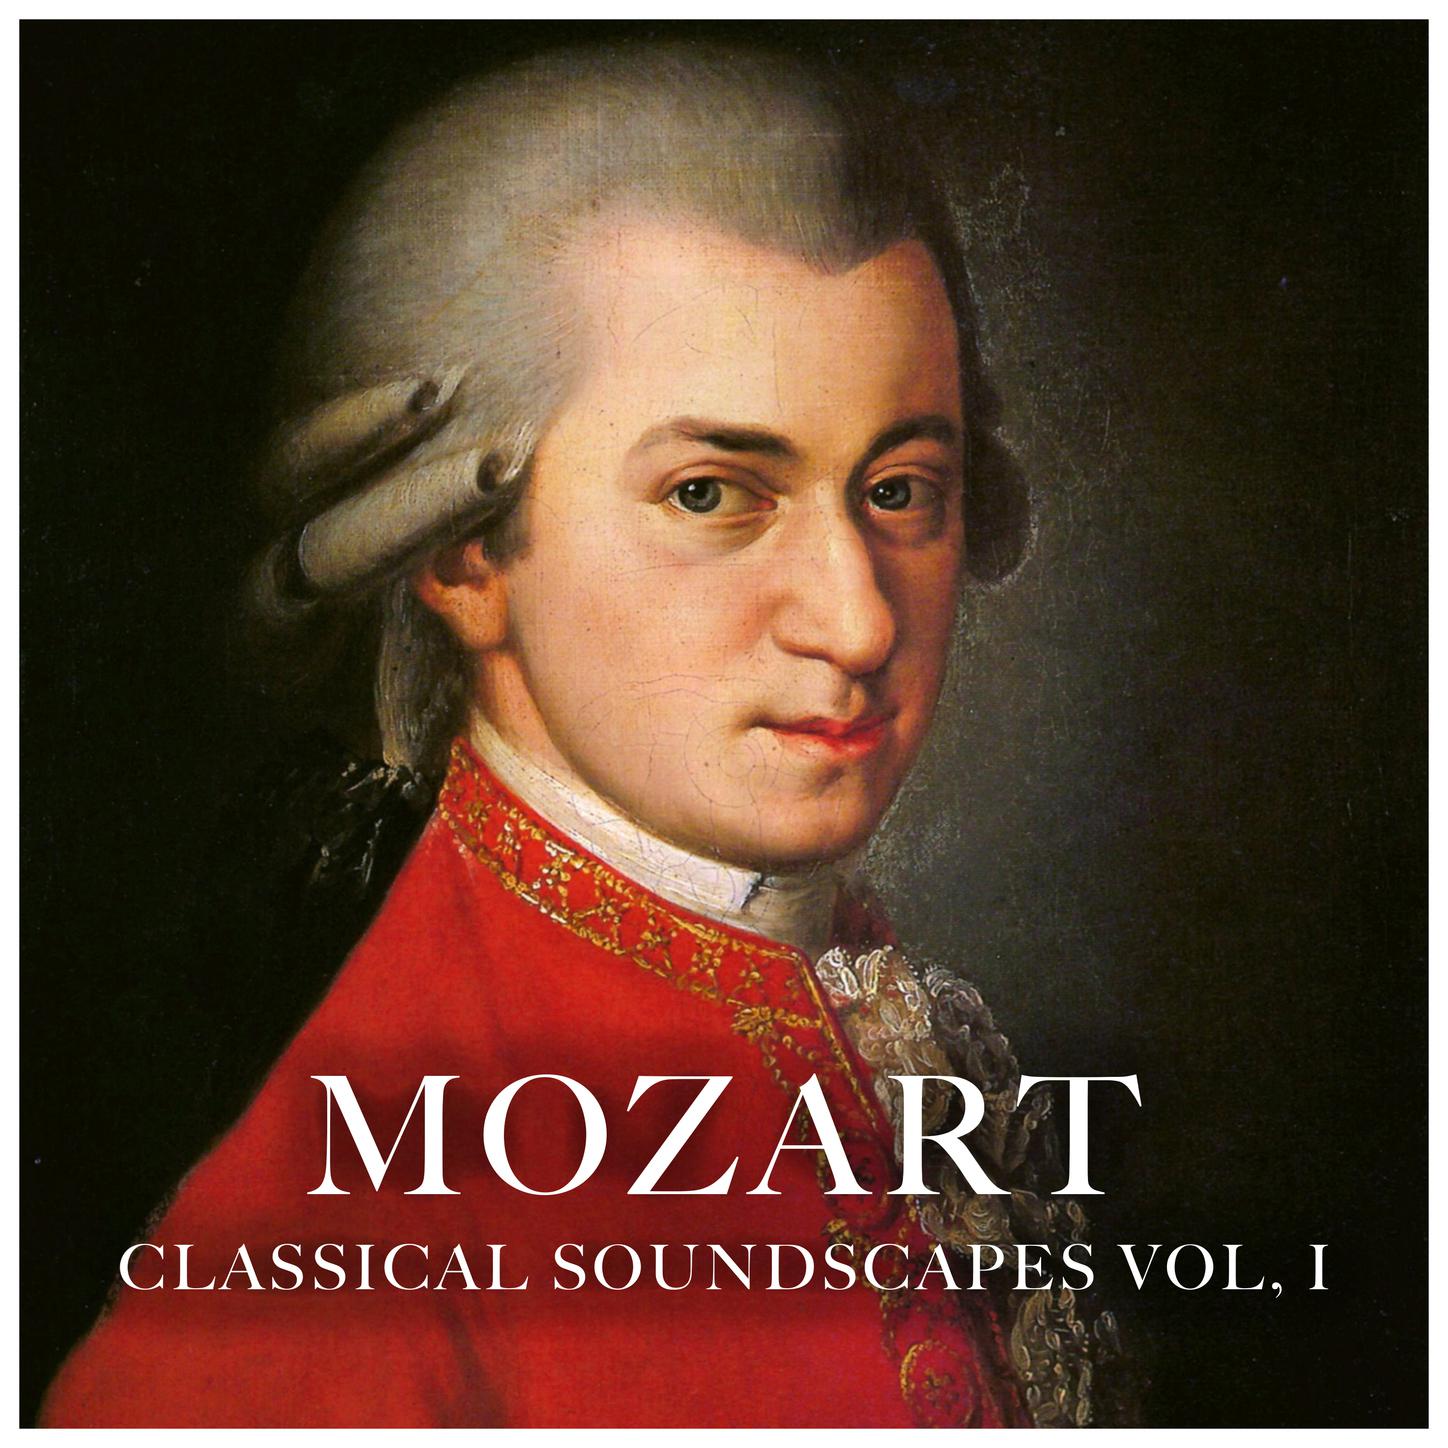 Mozart Classical Soundscapes Vol, 1